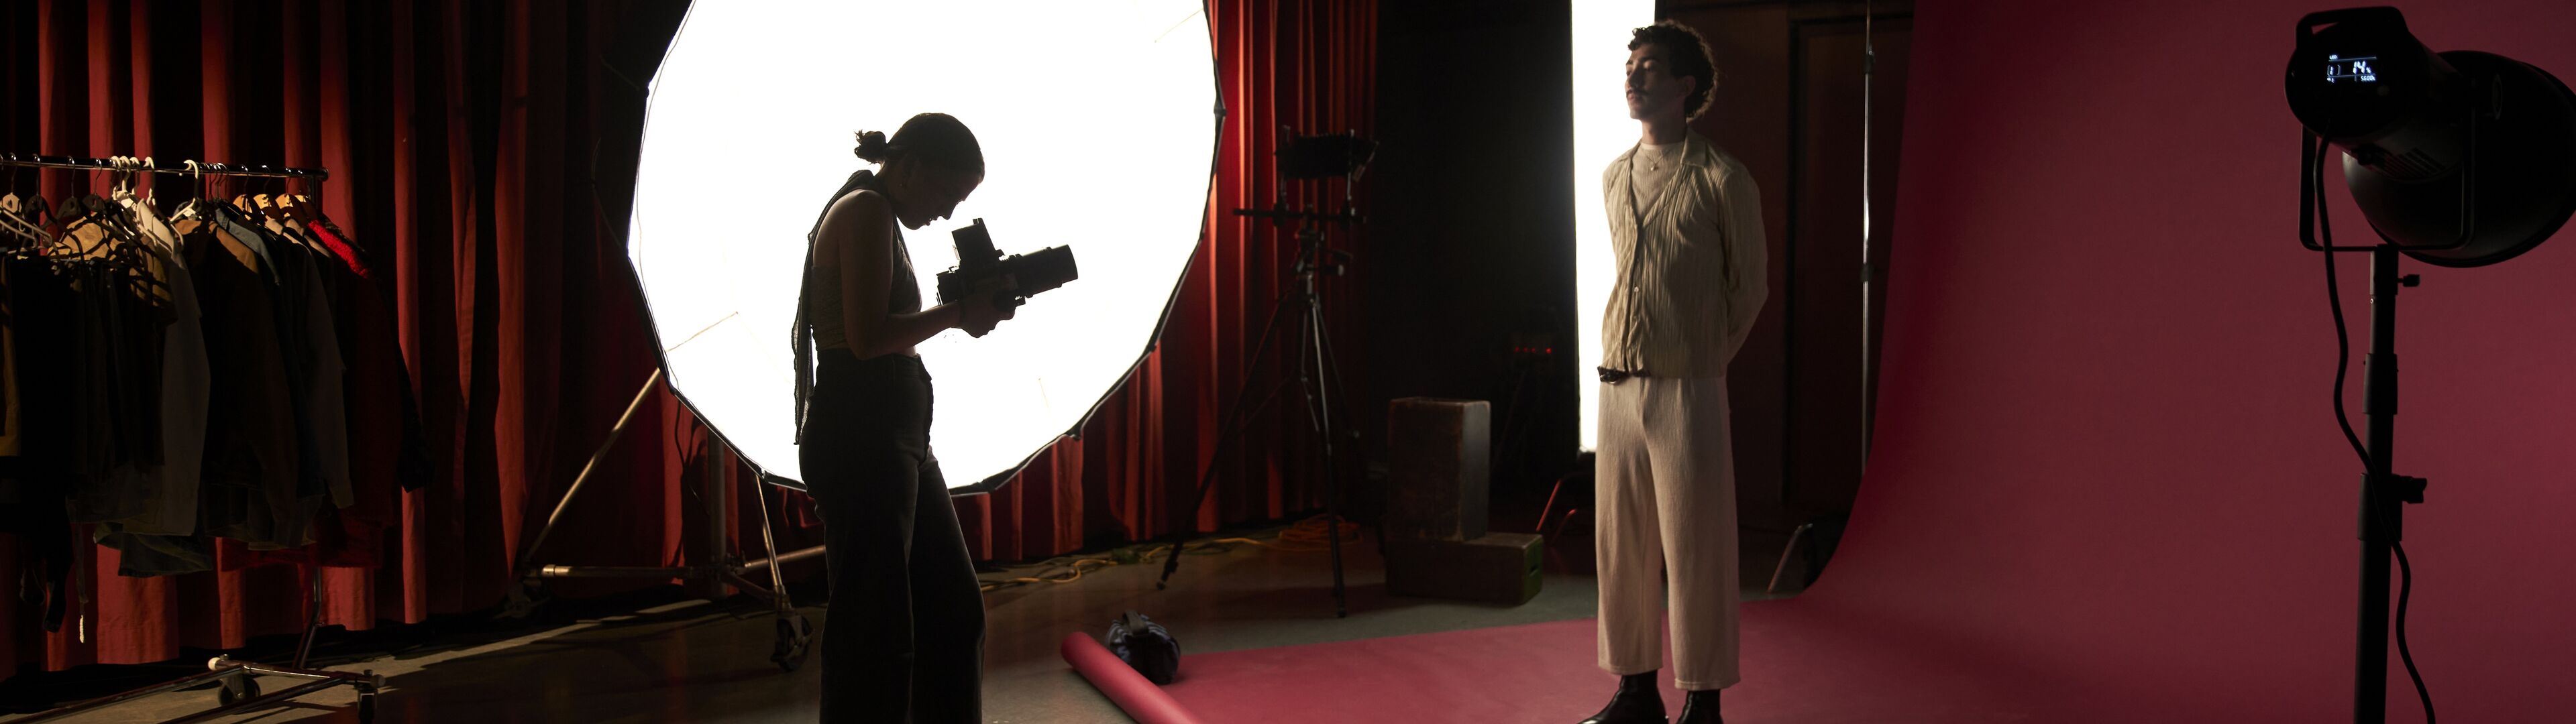 Un fotógrafo captura a un modelo en un ambiente de estudio estilizado, iluminado por un gran difusor circular con equipo de iluminación profesional.